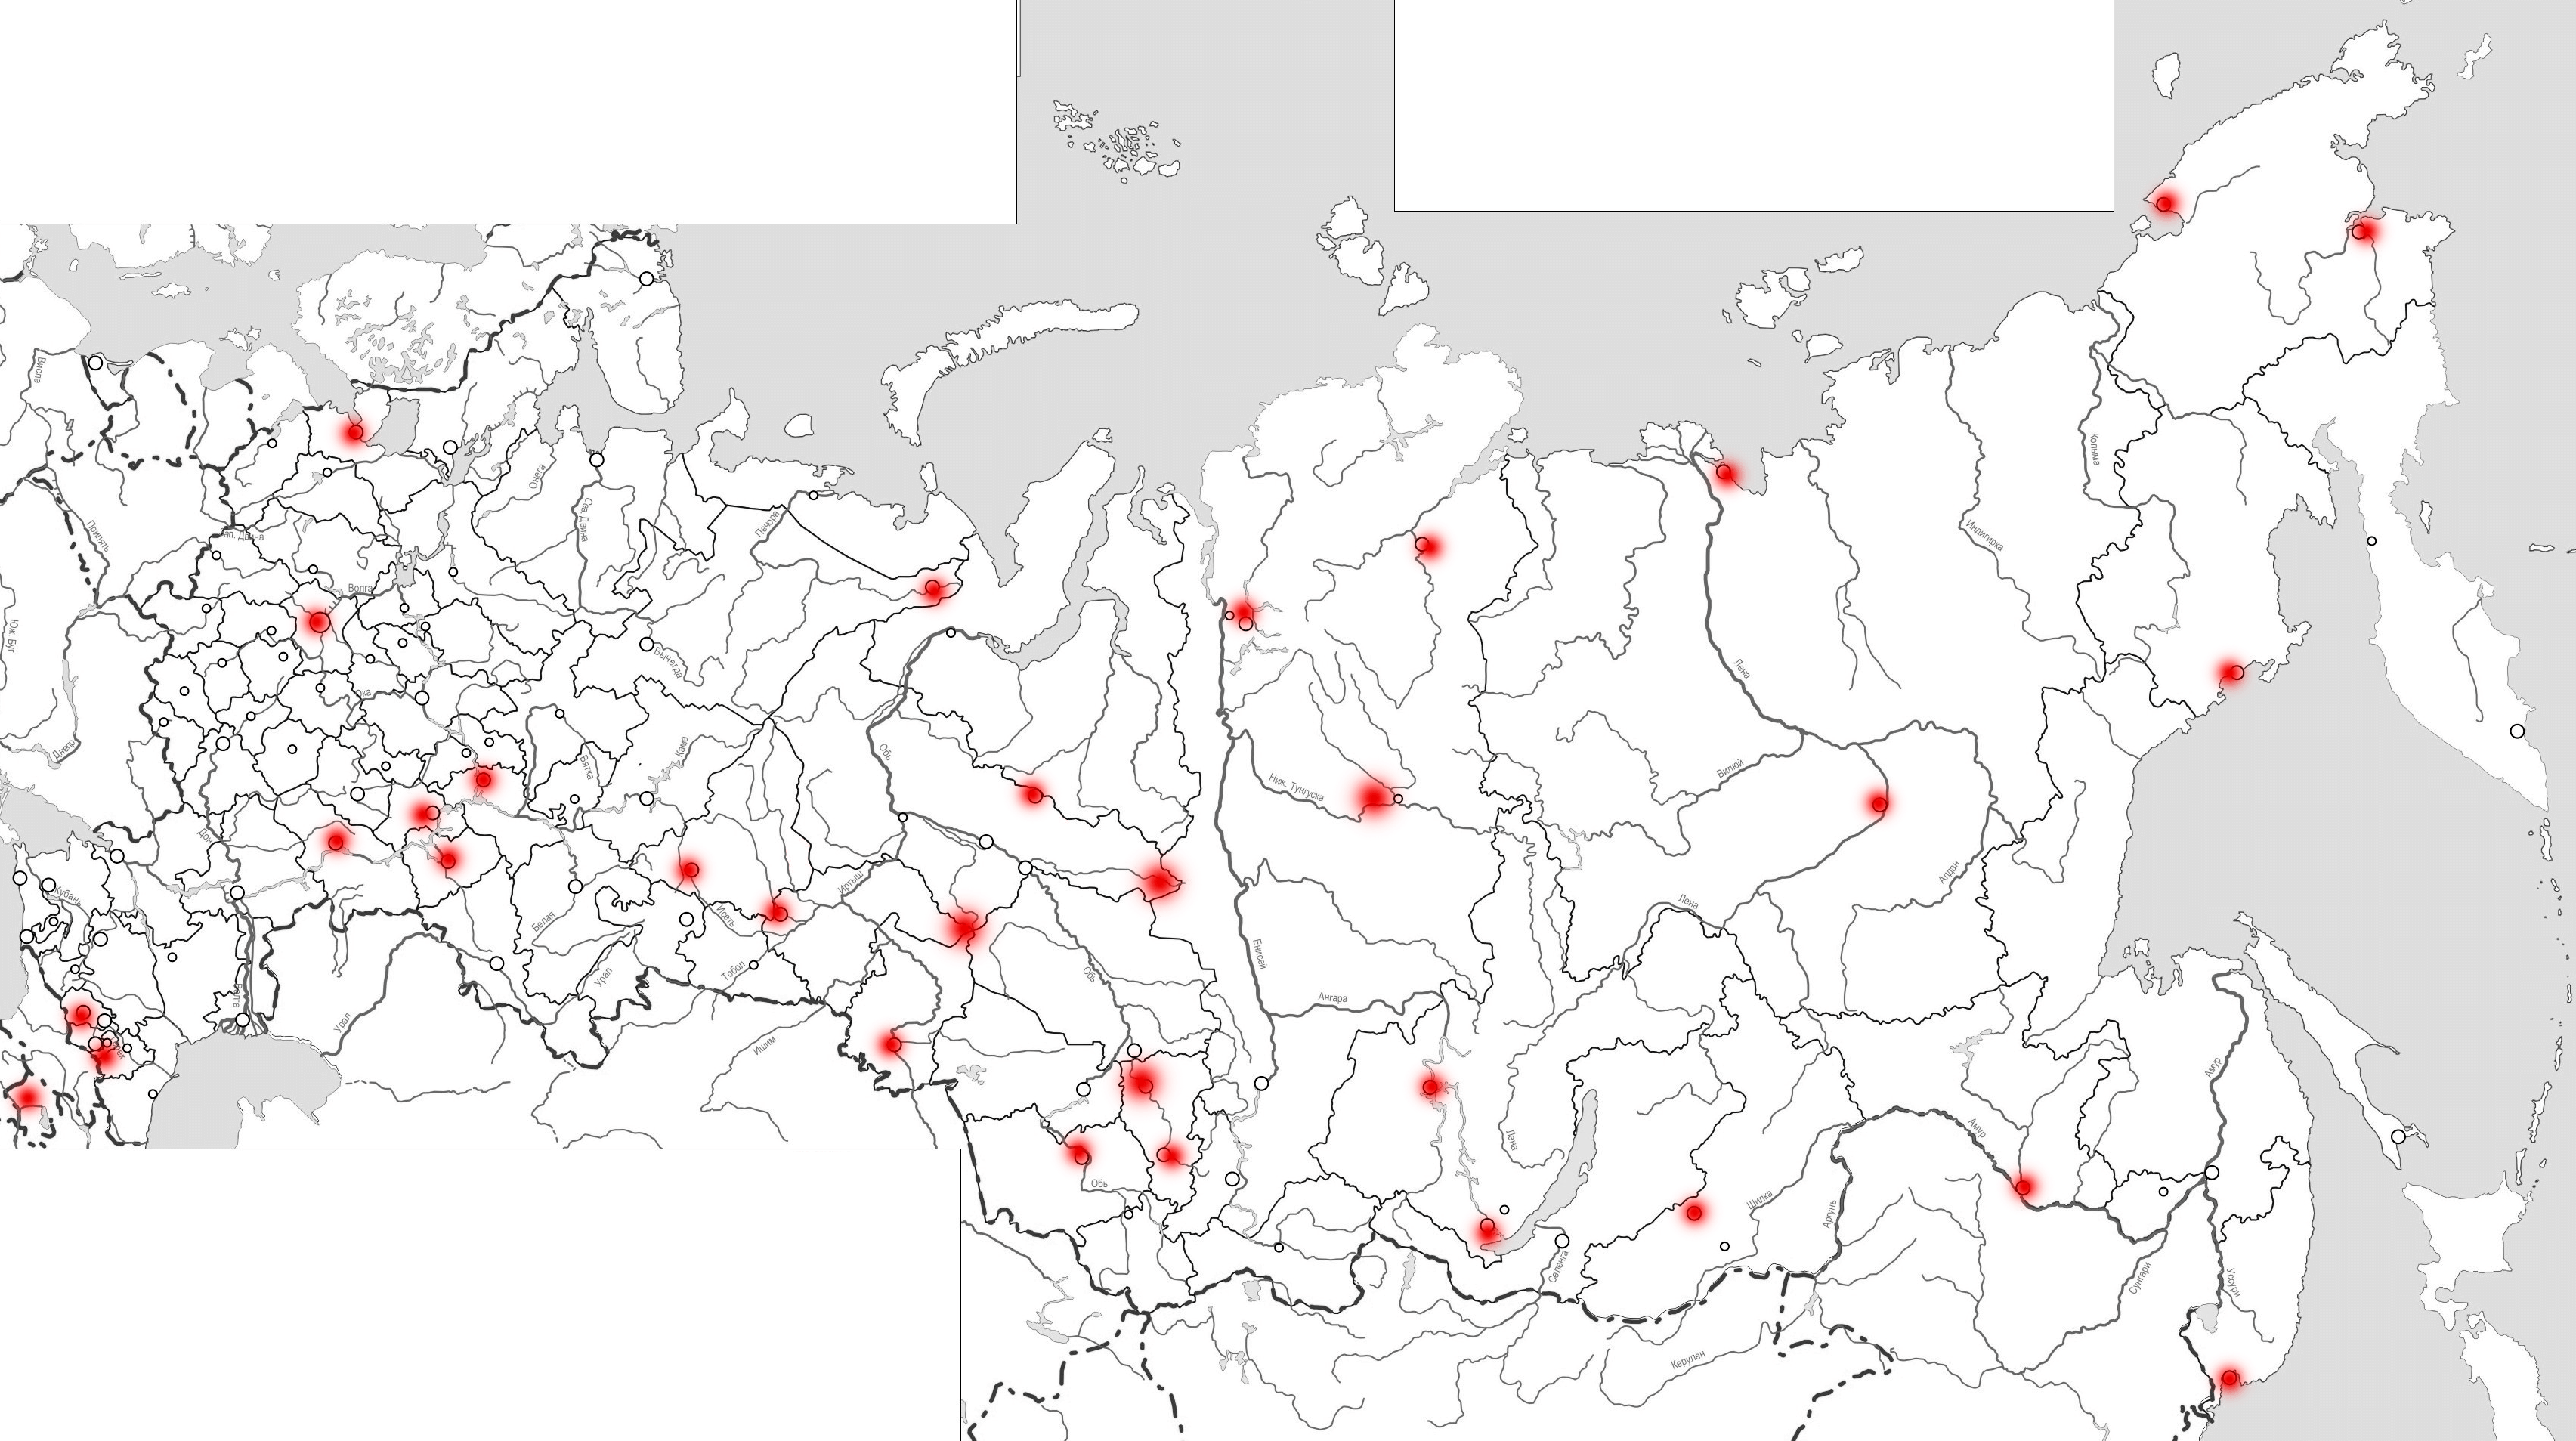 Киев на контурной карте